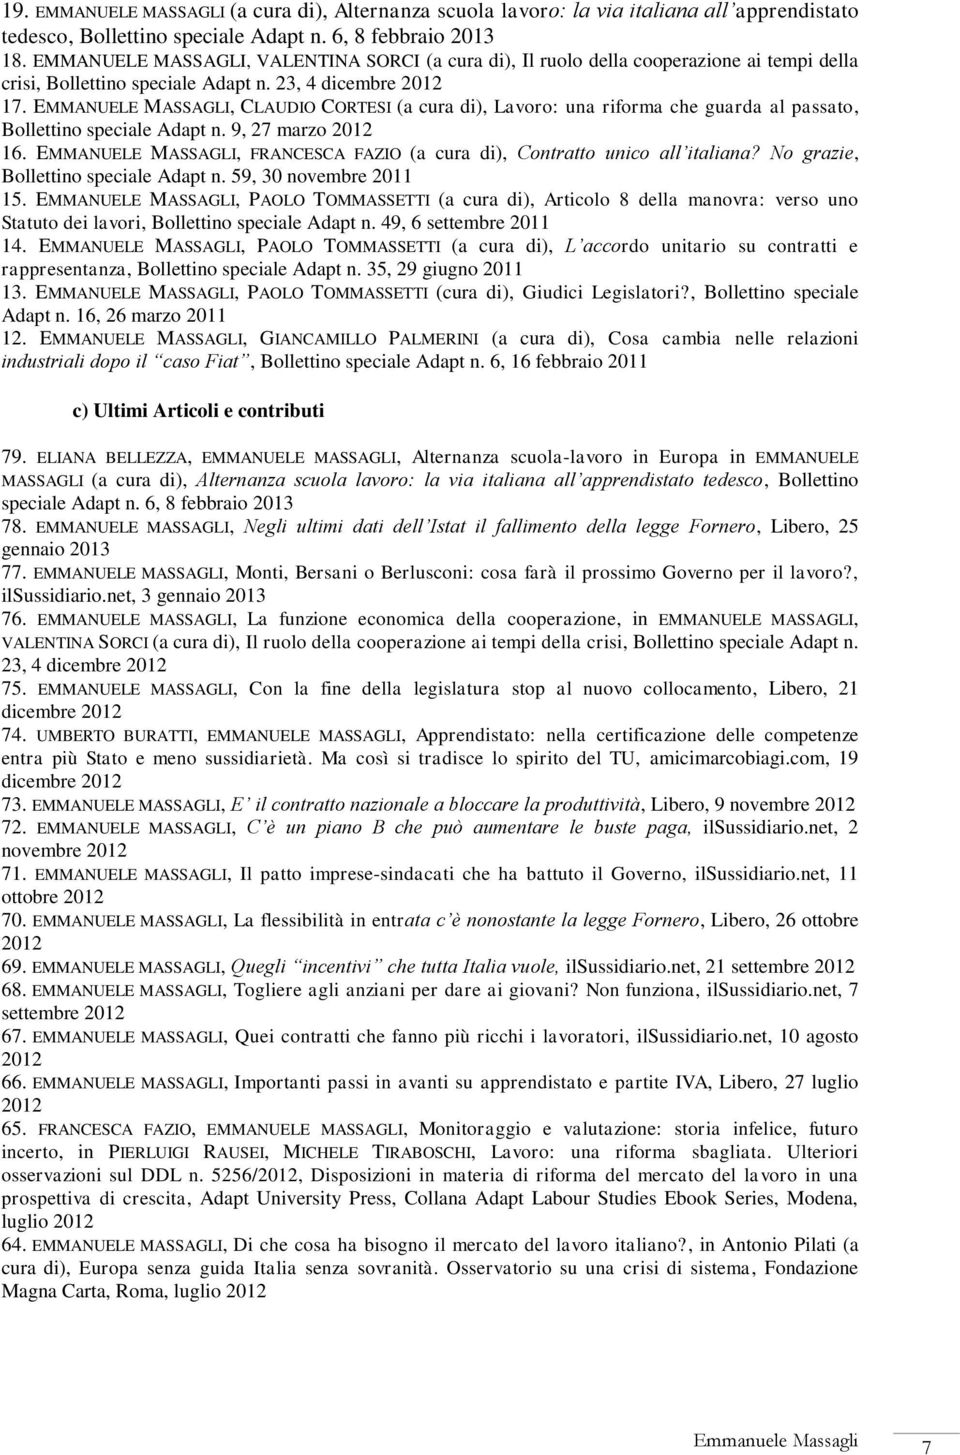 EMMANUELE MASSAGLI, CLAUDIO CORTESI (a cura di), Lavoro: una riforma che guarda al passato, Bollettino speciale Adapt n. 9, 27 marzo 2012 16.